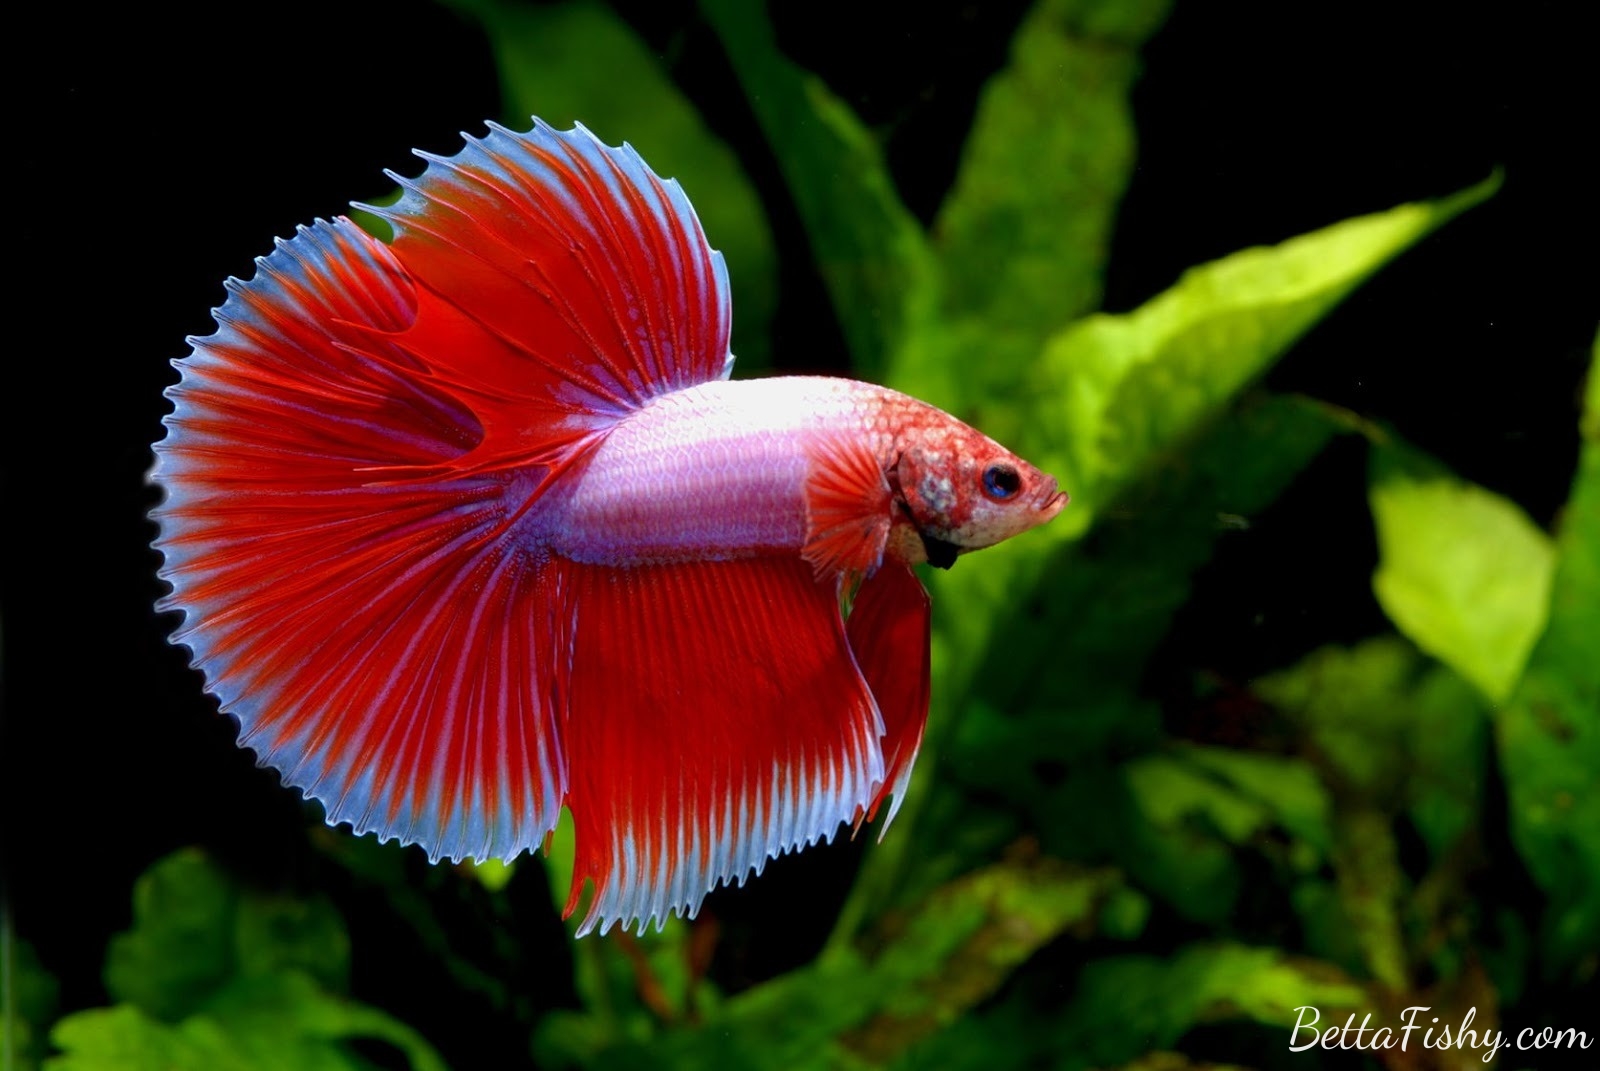 Multicolored Red betta fish